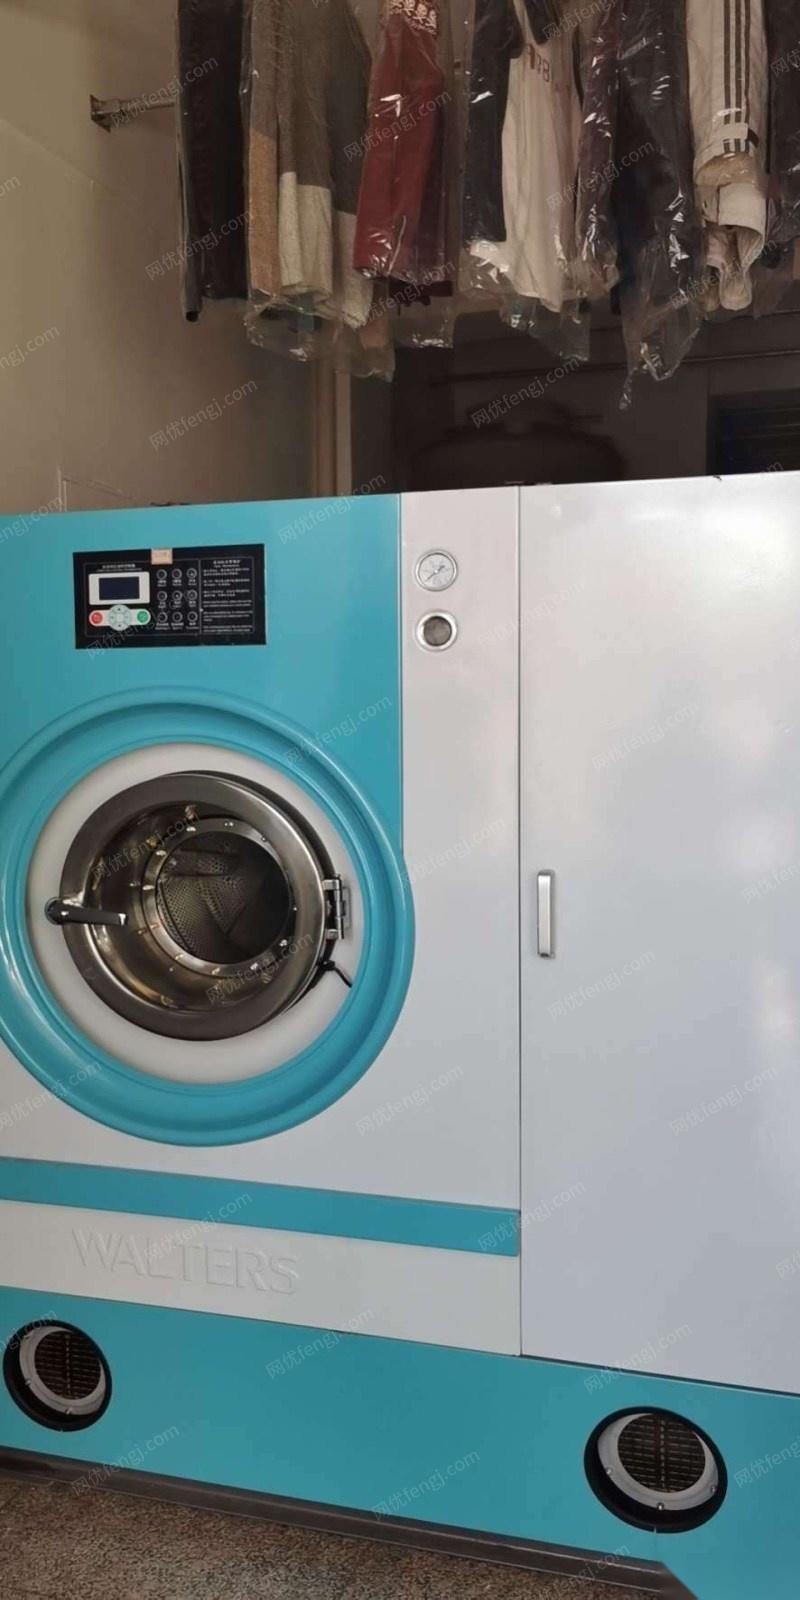 天津津南区整套干洗店设备因租金到期现特价处理 38000元